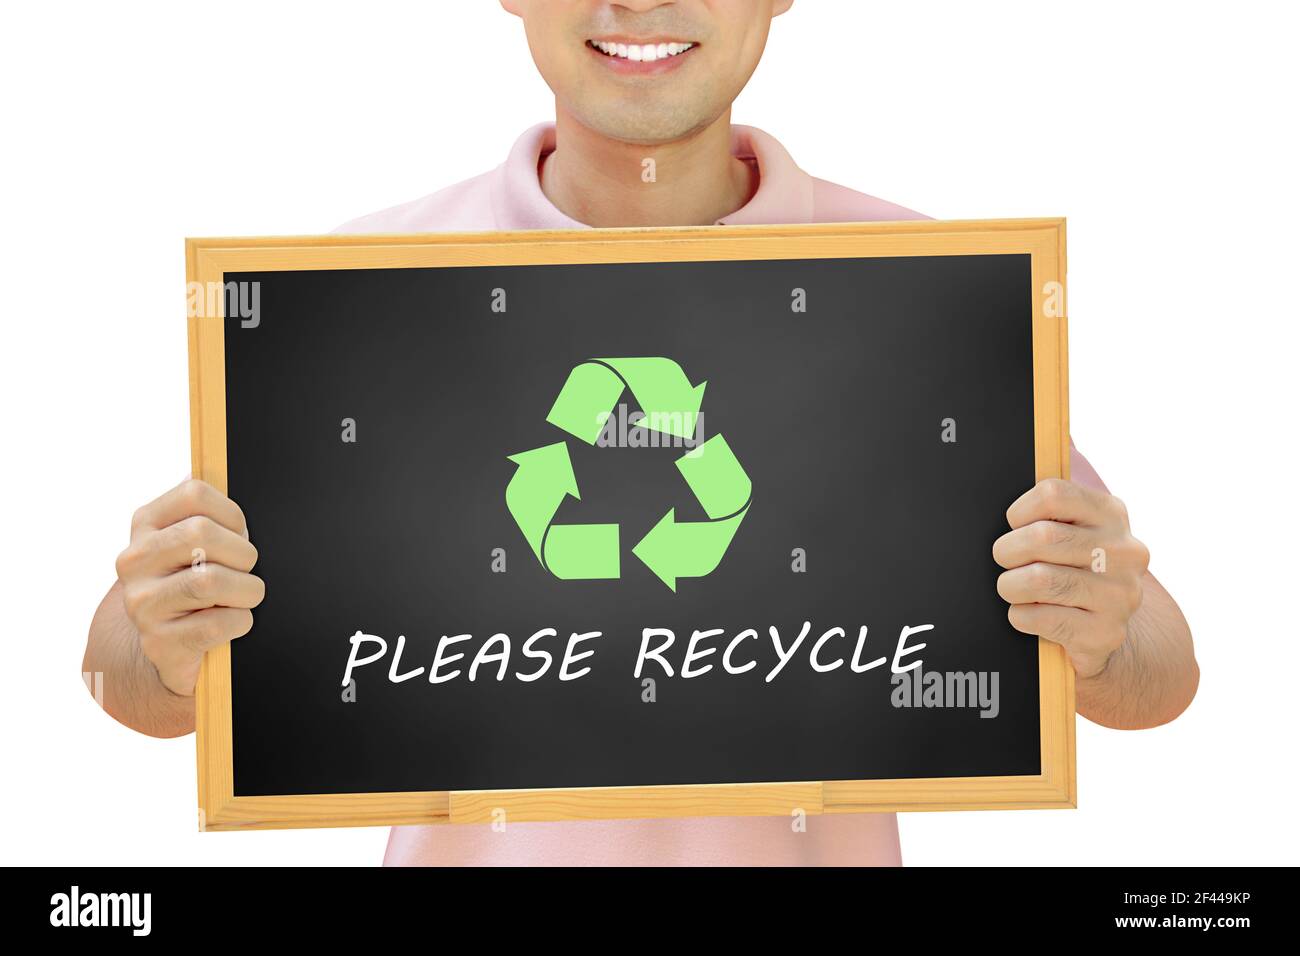 Recycling-Schild mit Texten auf Tafel von lächelnden Mann gehalten - Umweltschutzkonzept & Recycling-Kampagne Stockfoto